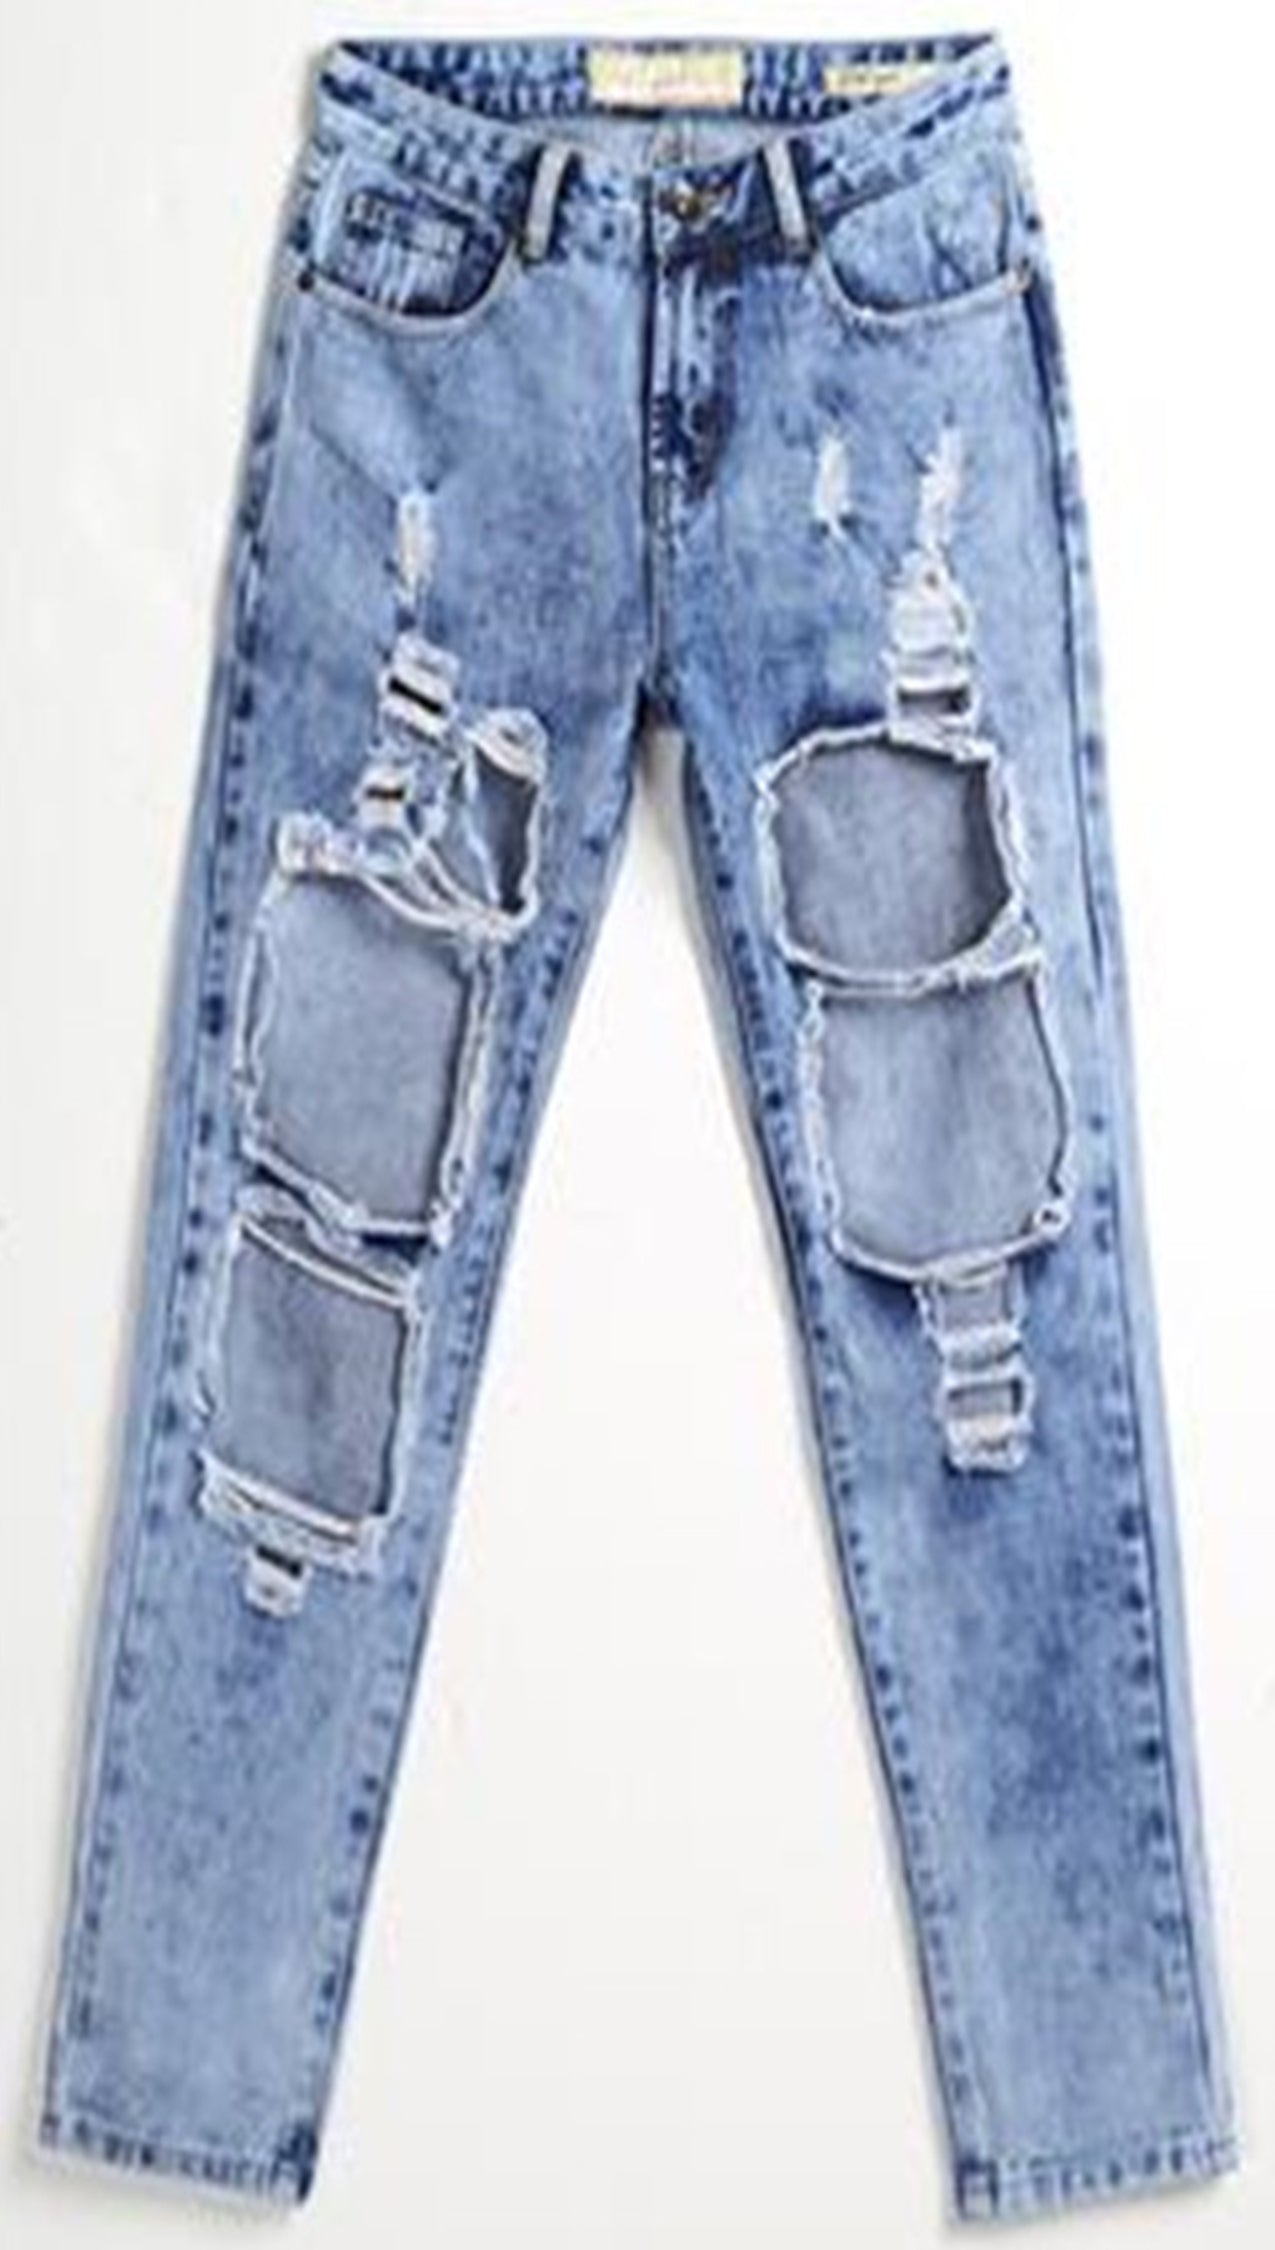 Boyfriend jeans Escada Navy size 36 FR in Cotton - 39395900